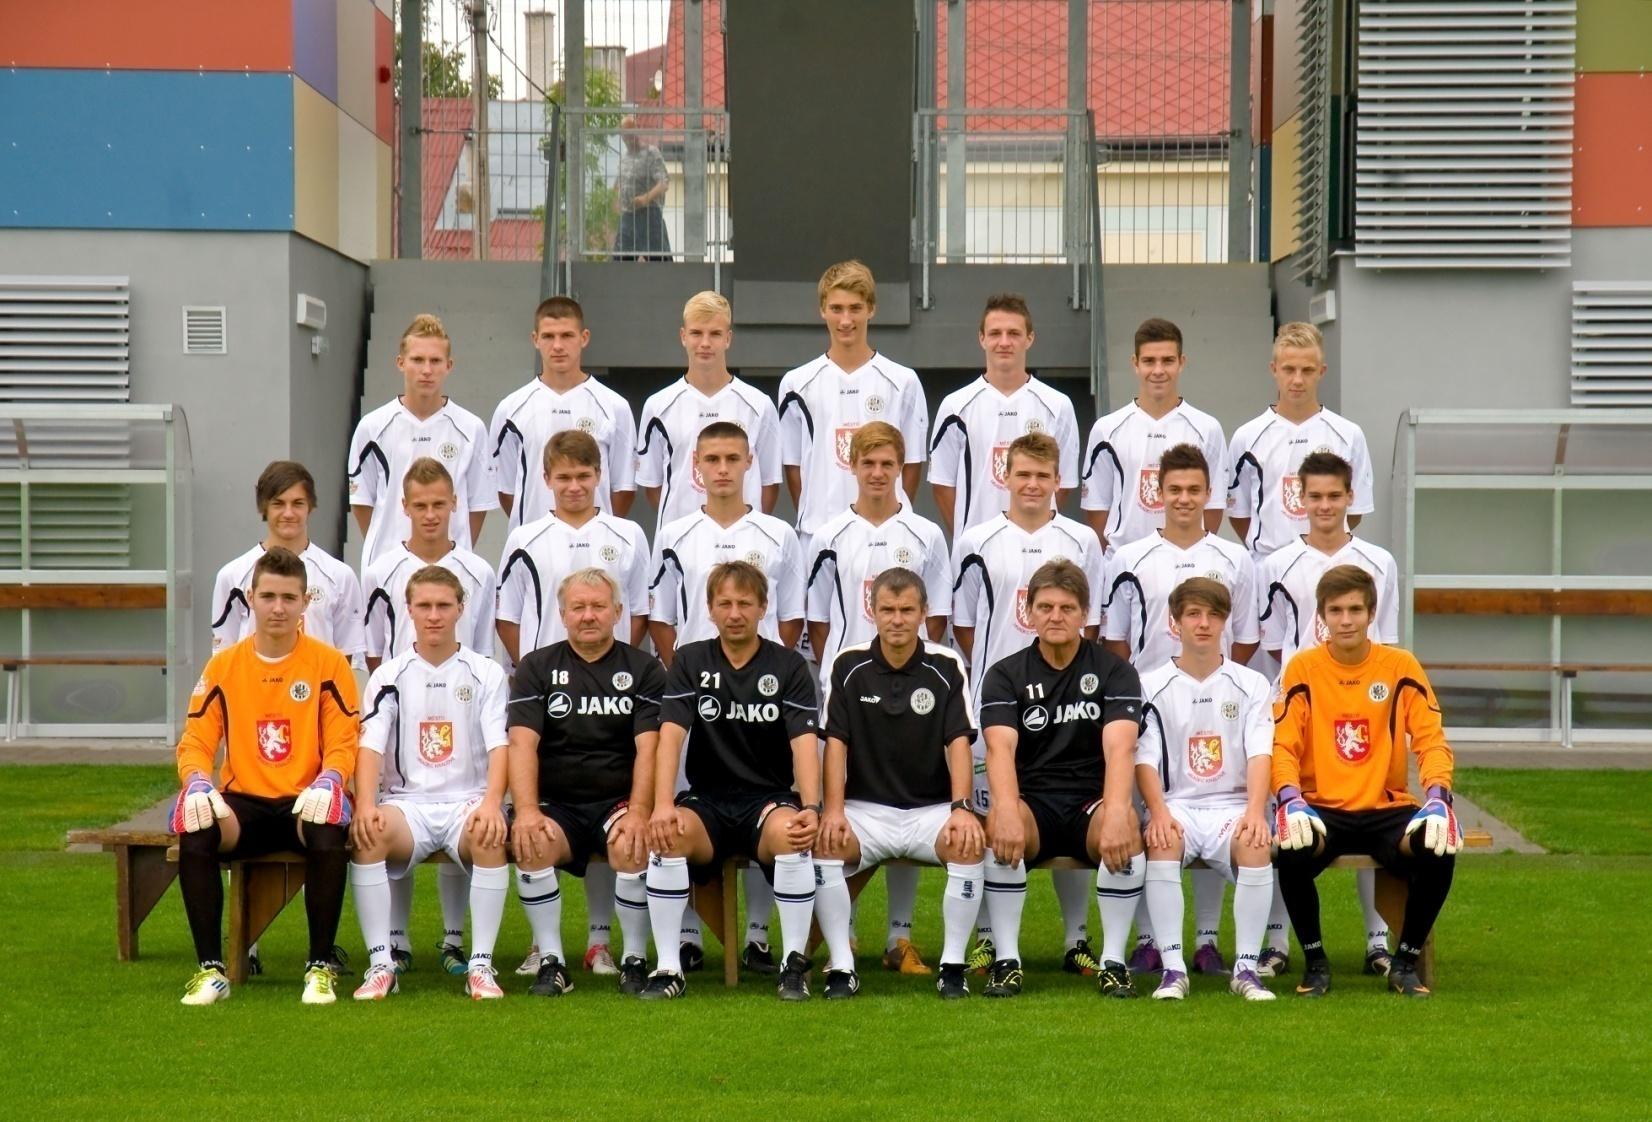 FC Hradec Králové U17 Soutěž Liga dorostu U-17, je soutěží pěti regiónů z Čech. Královéhradeckého,Pardubického,Pražského, Libereckého, Středočeského kraje.